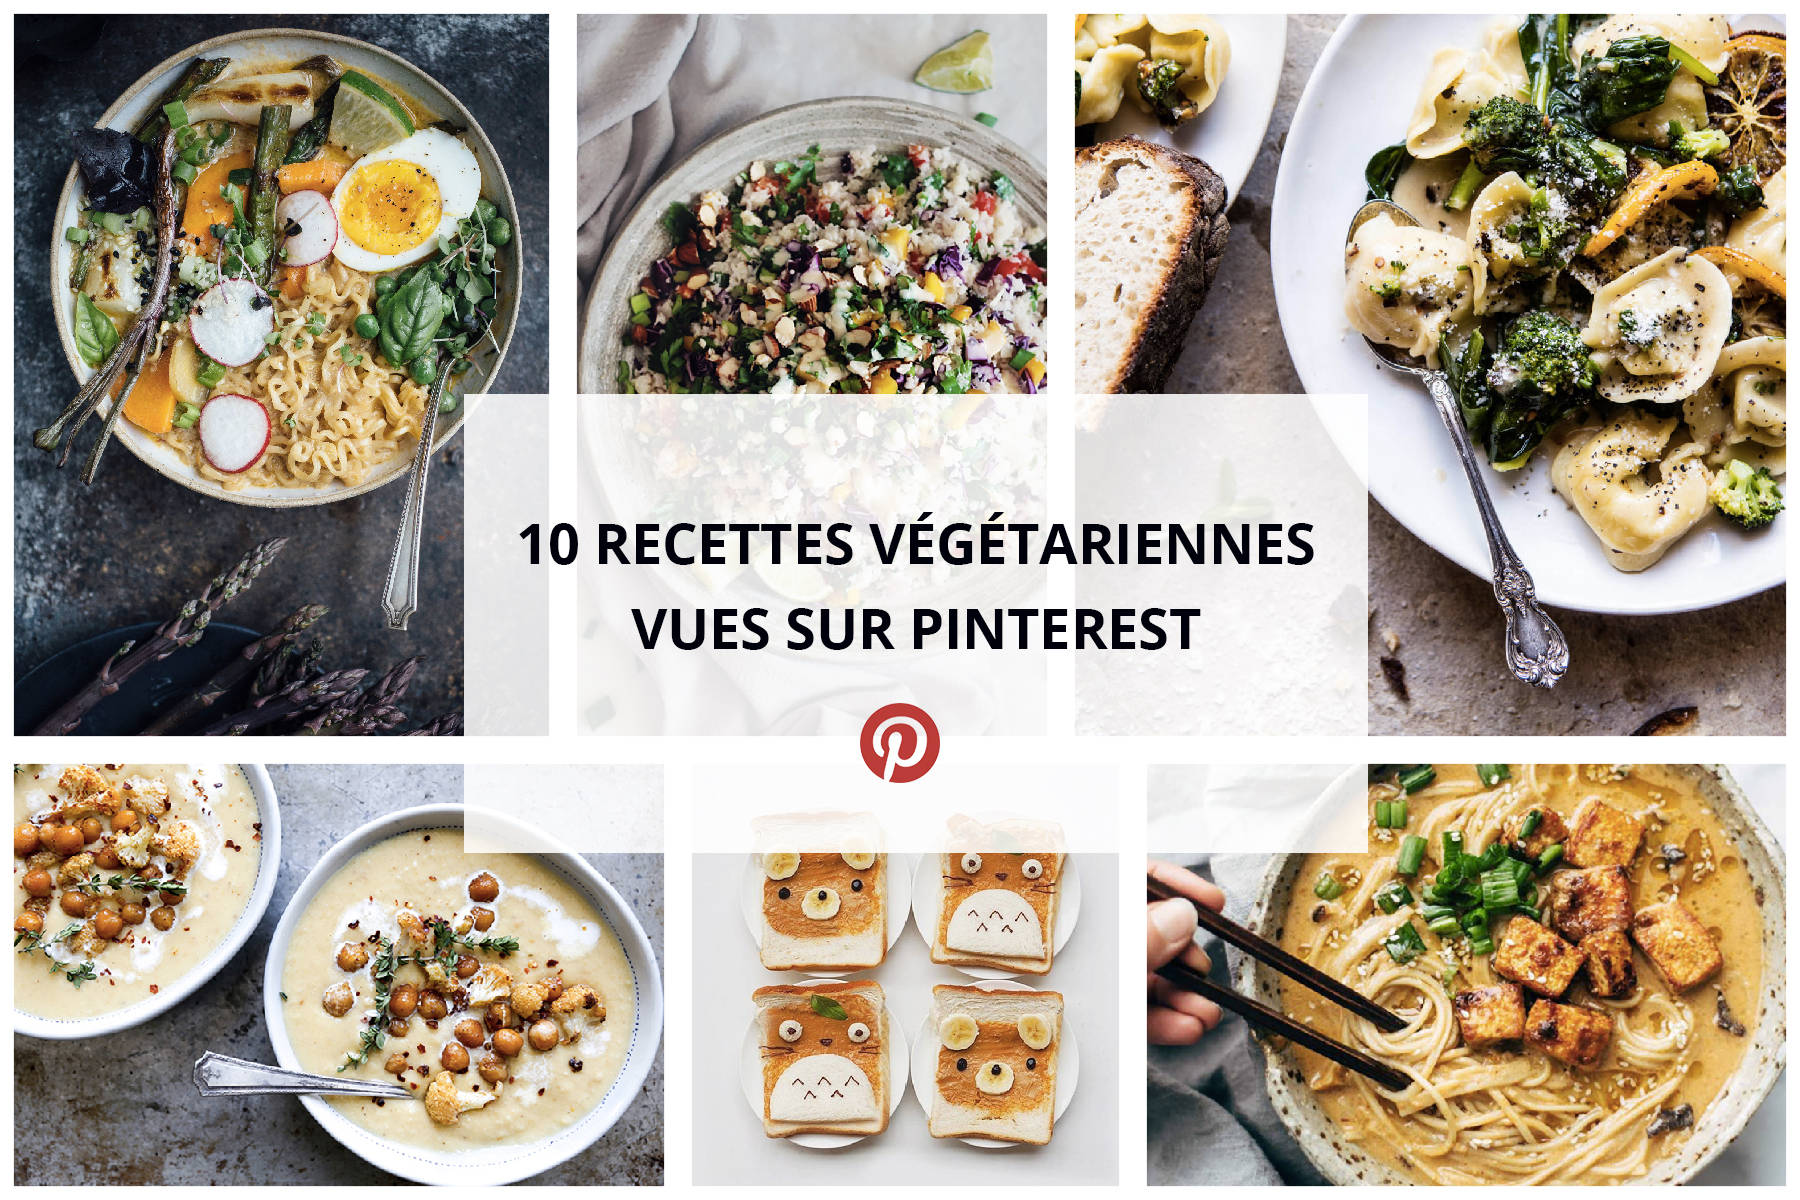 10 recettes végétariennes vues sur Pinterest